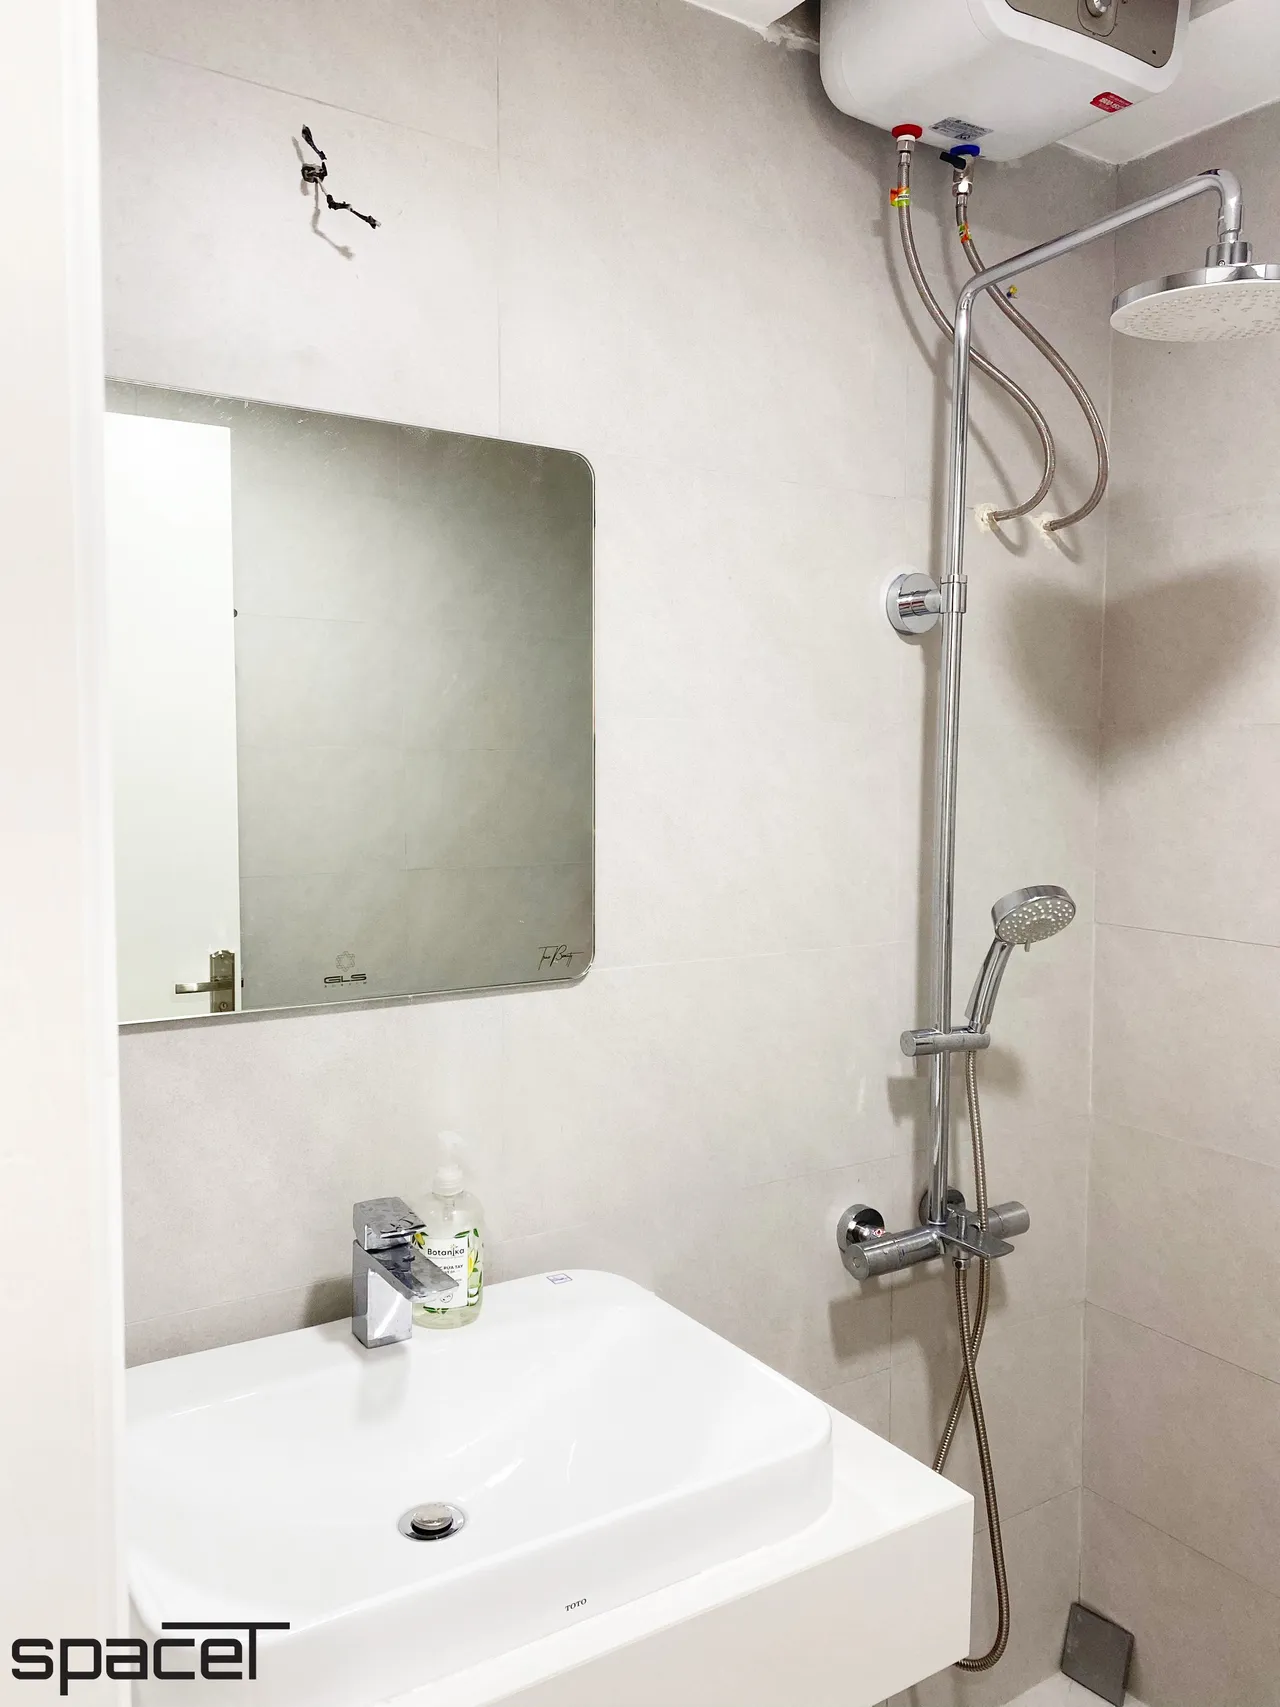  Phòng tắm - Cải tạo Căn hộ Hoàng Anh Gia Lai 2 - Phong cách Minimalist 